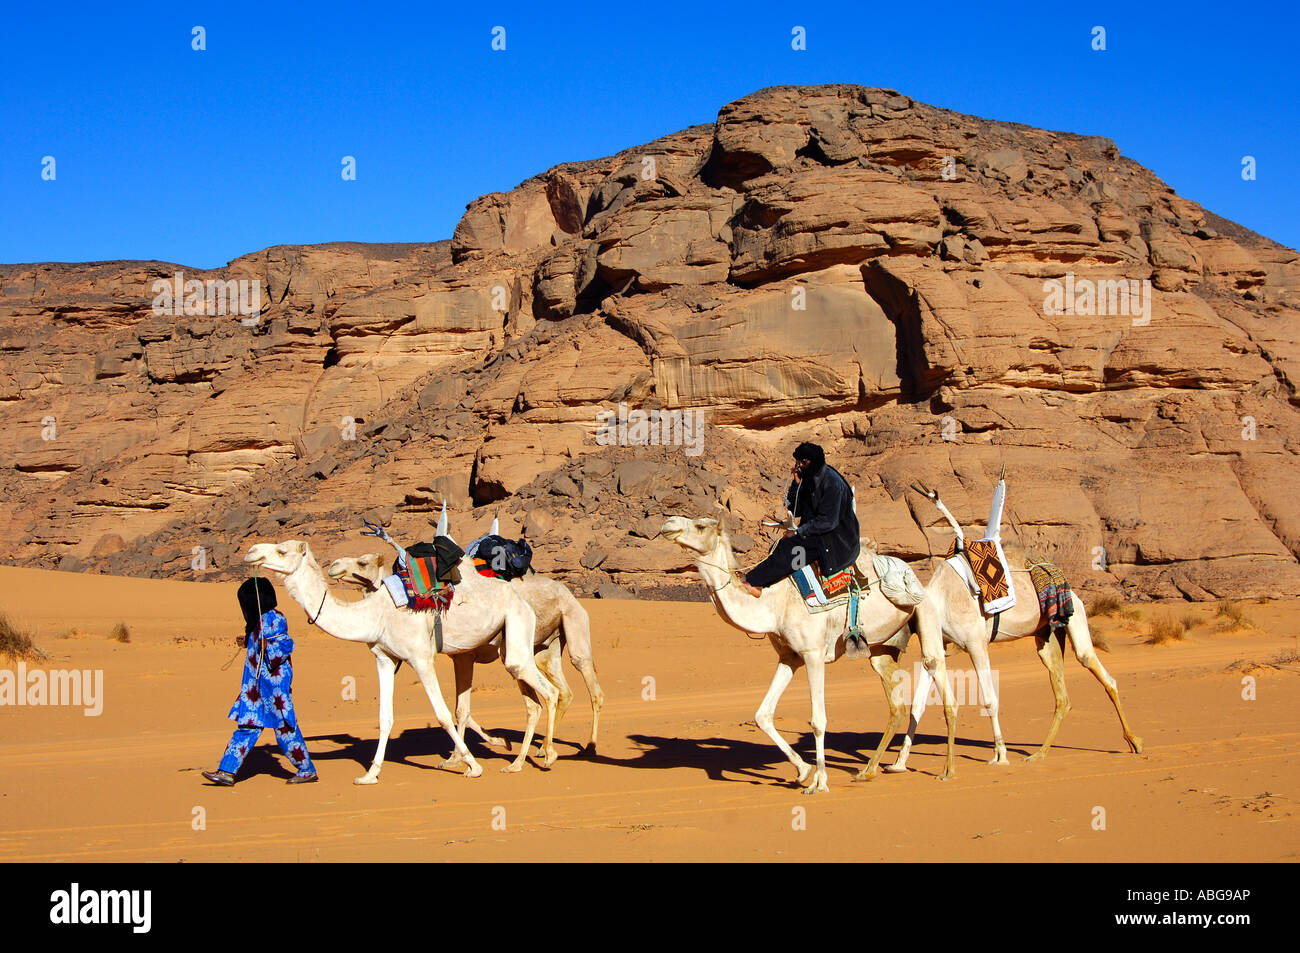 Tuareg with white Mehari riding dromedary, Acacus Mountains, Libya Stock Photo